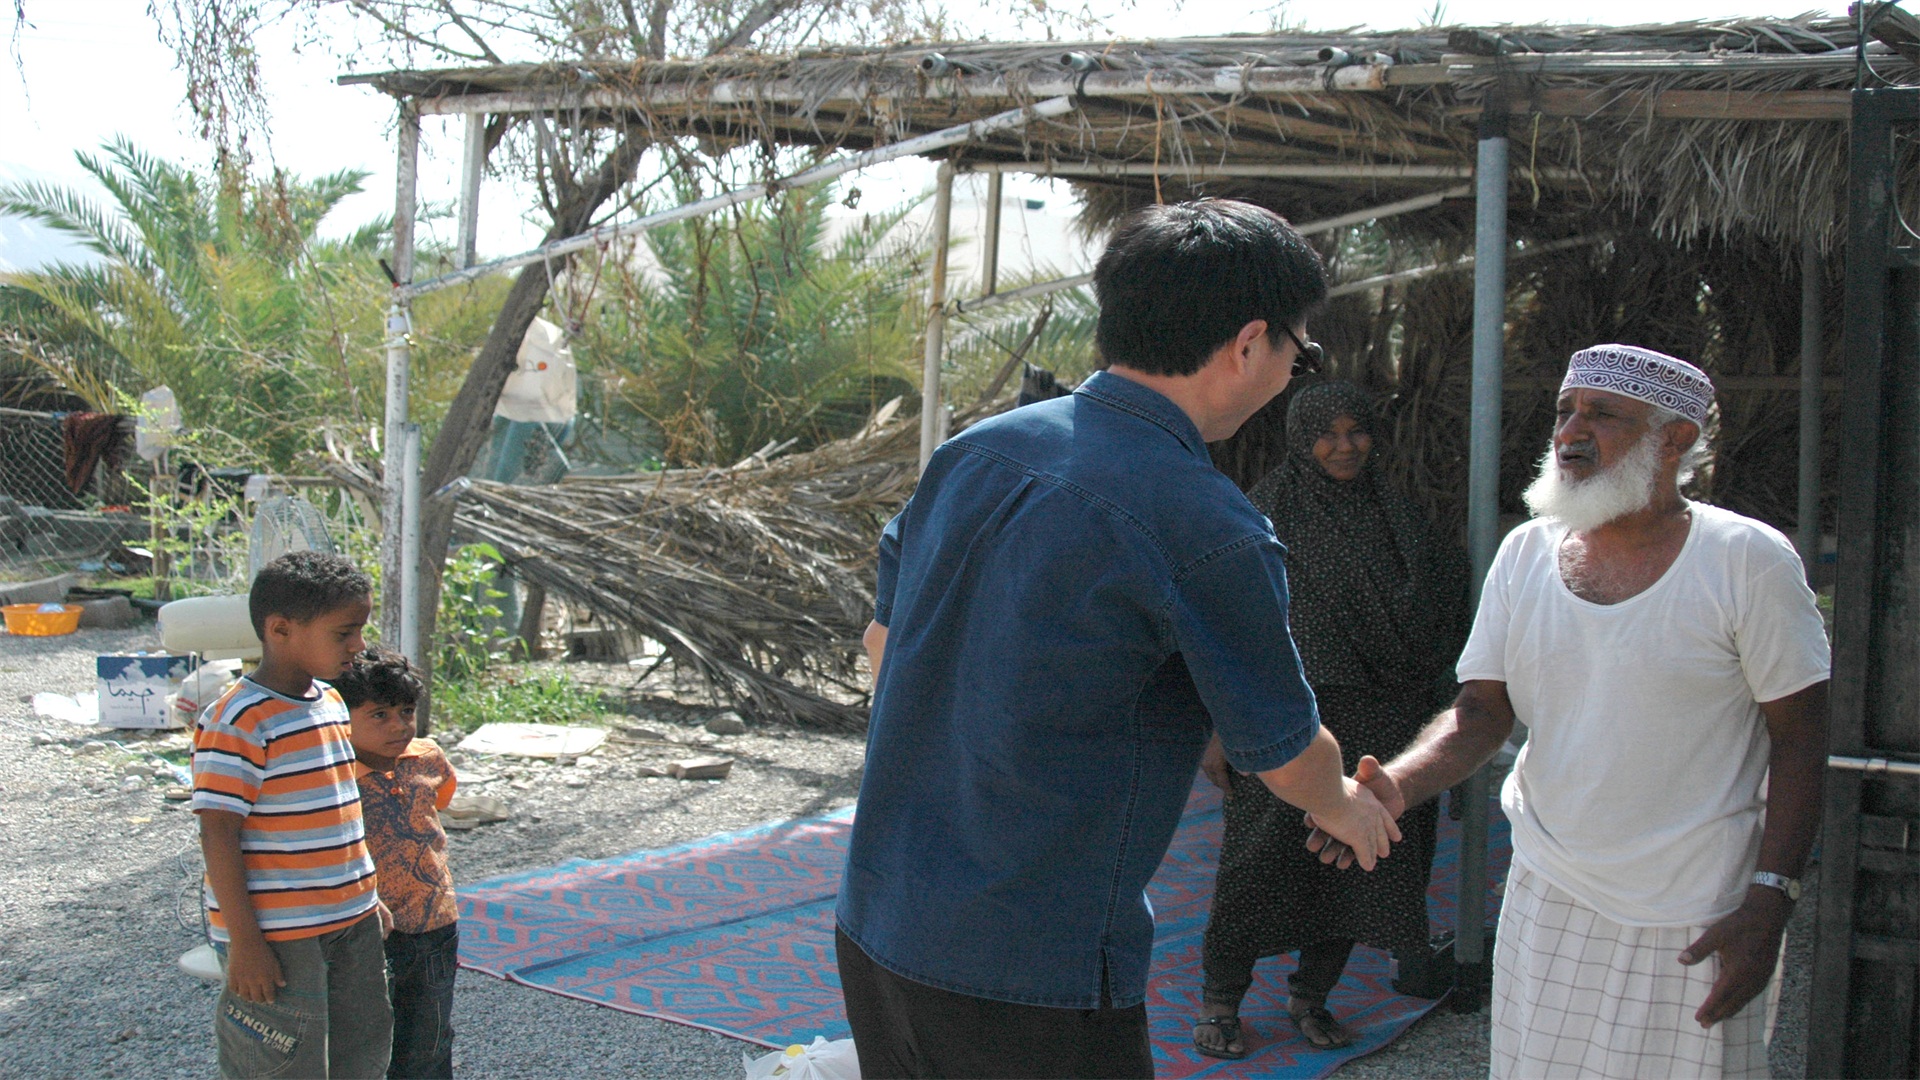 【社會責任】                        圖片背景：阿曼項目，一場颶風過后，當地很多居民缺衣缺食。中國石油人的捐贈很及時。                            隱藏文字說明